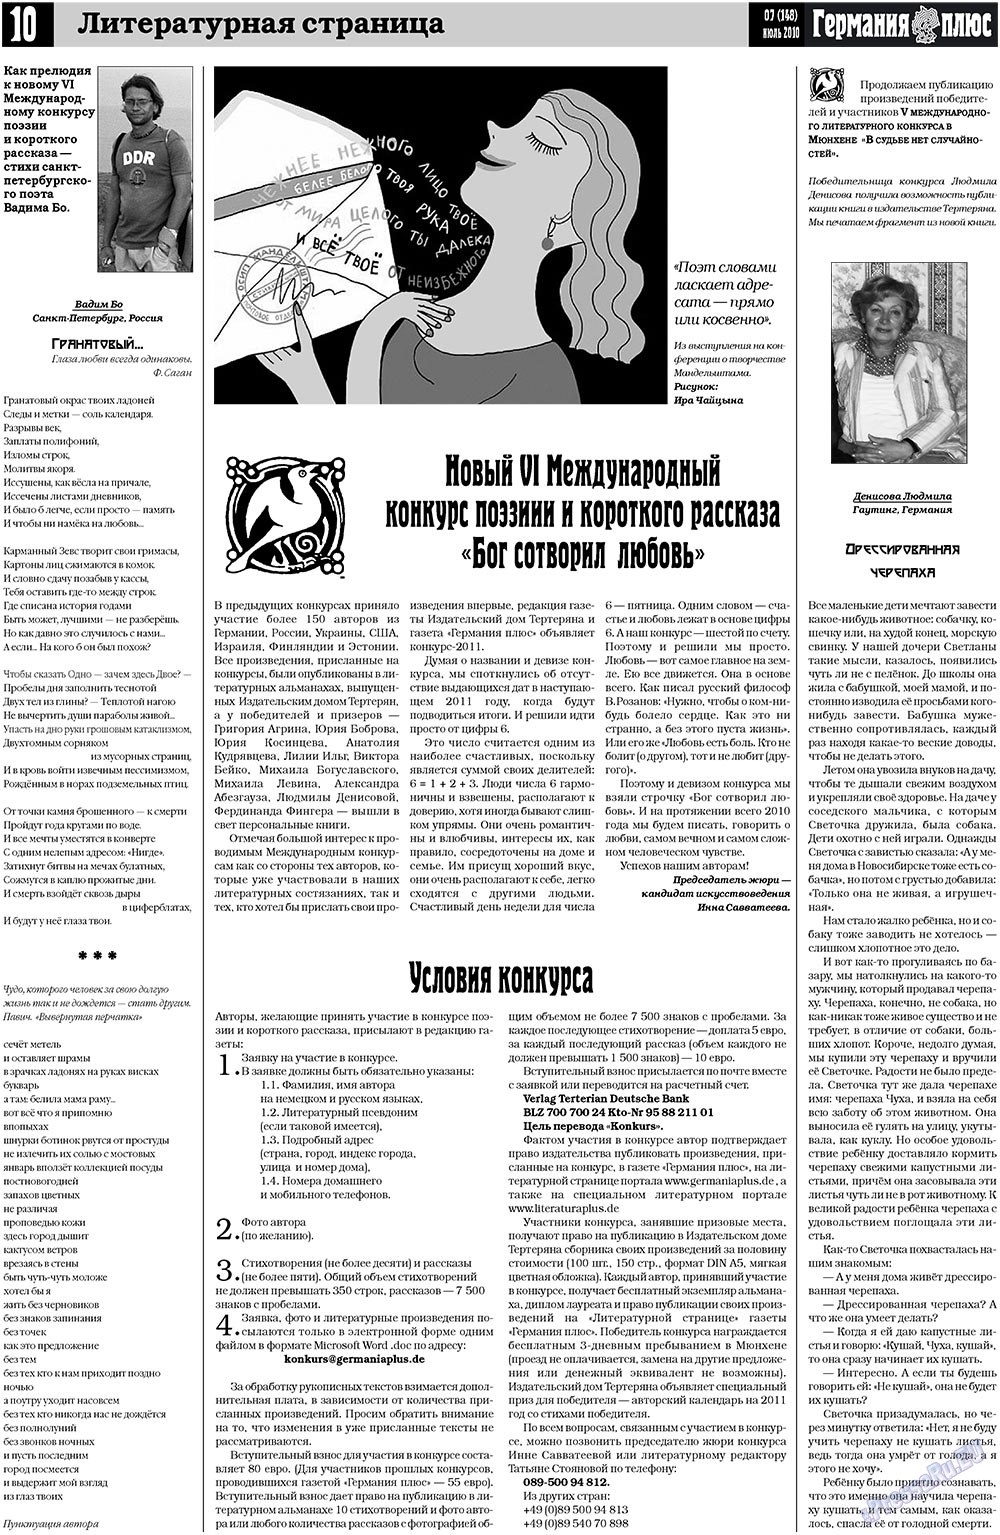 Германия плюс, газета. 2010 №7 стр.10